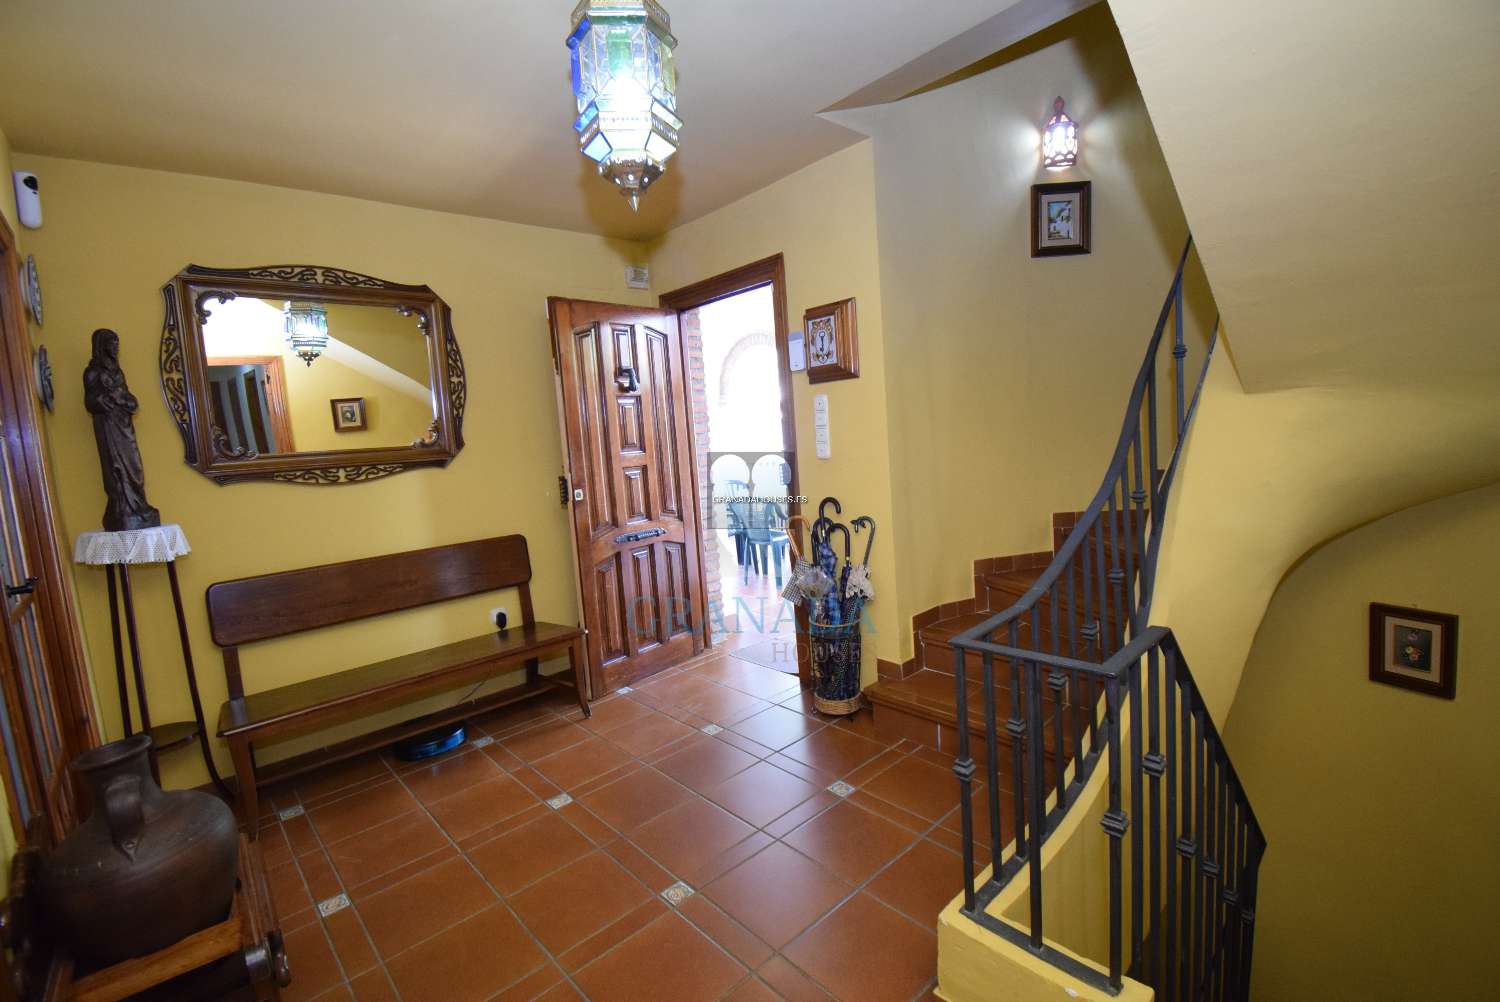 Detached villa at 15 mins to Granada city